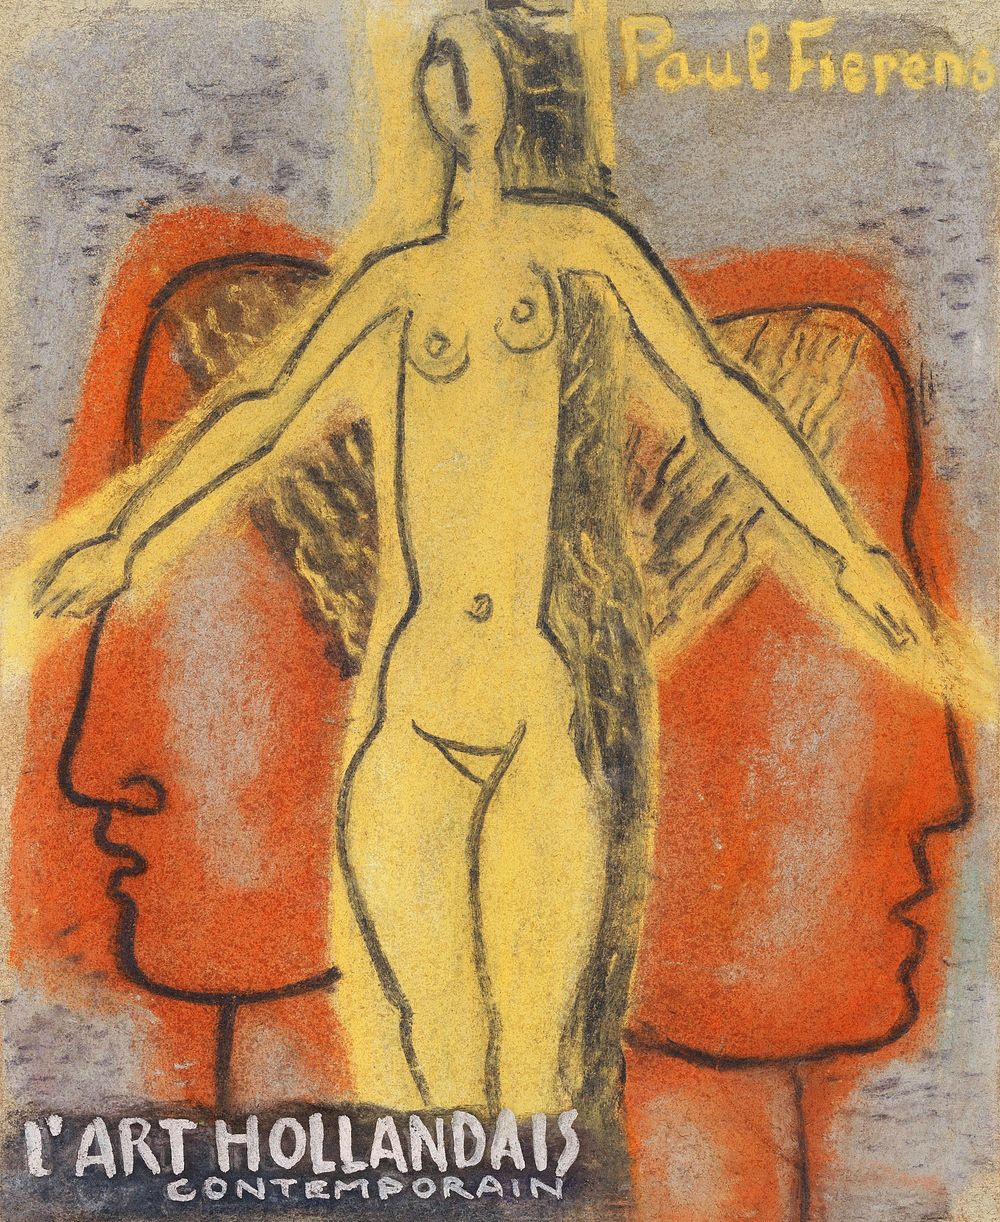 Naakte vrouw tussen twee van elkaar weg kijkende mannen hoofden (1933) by Leo Gestel. Original from The Rijksmuseum.…